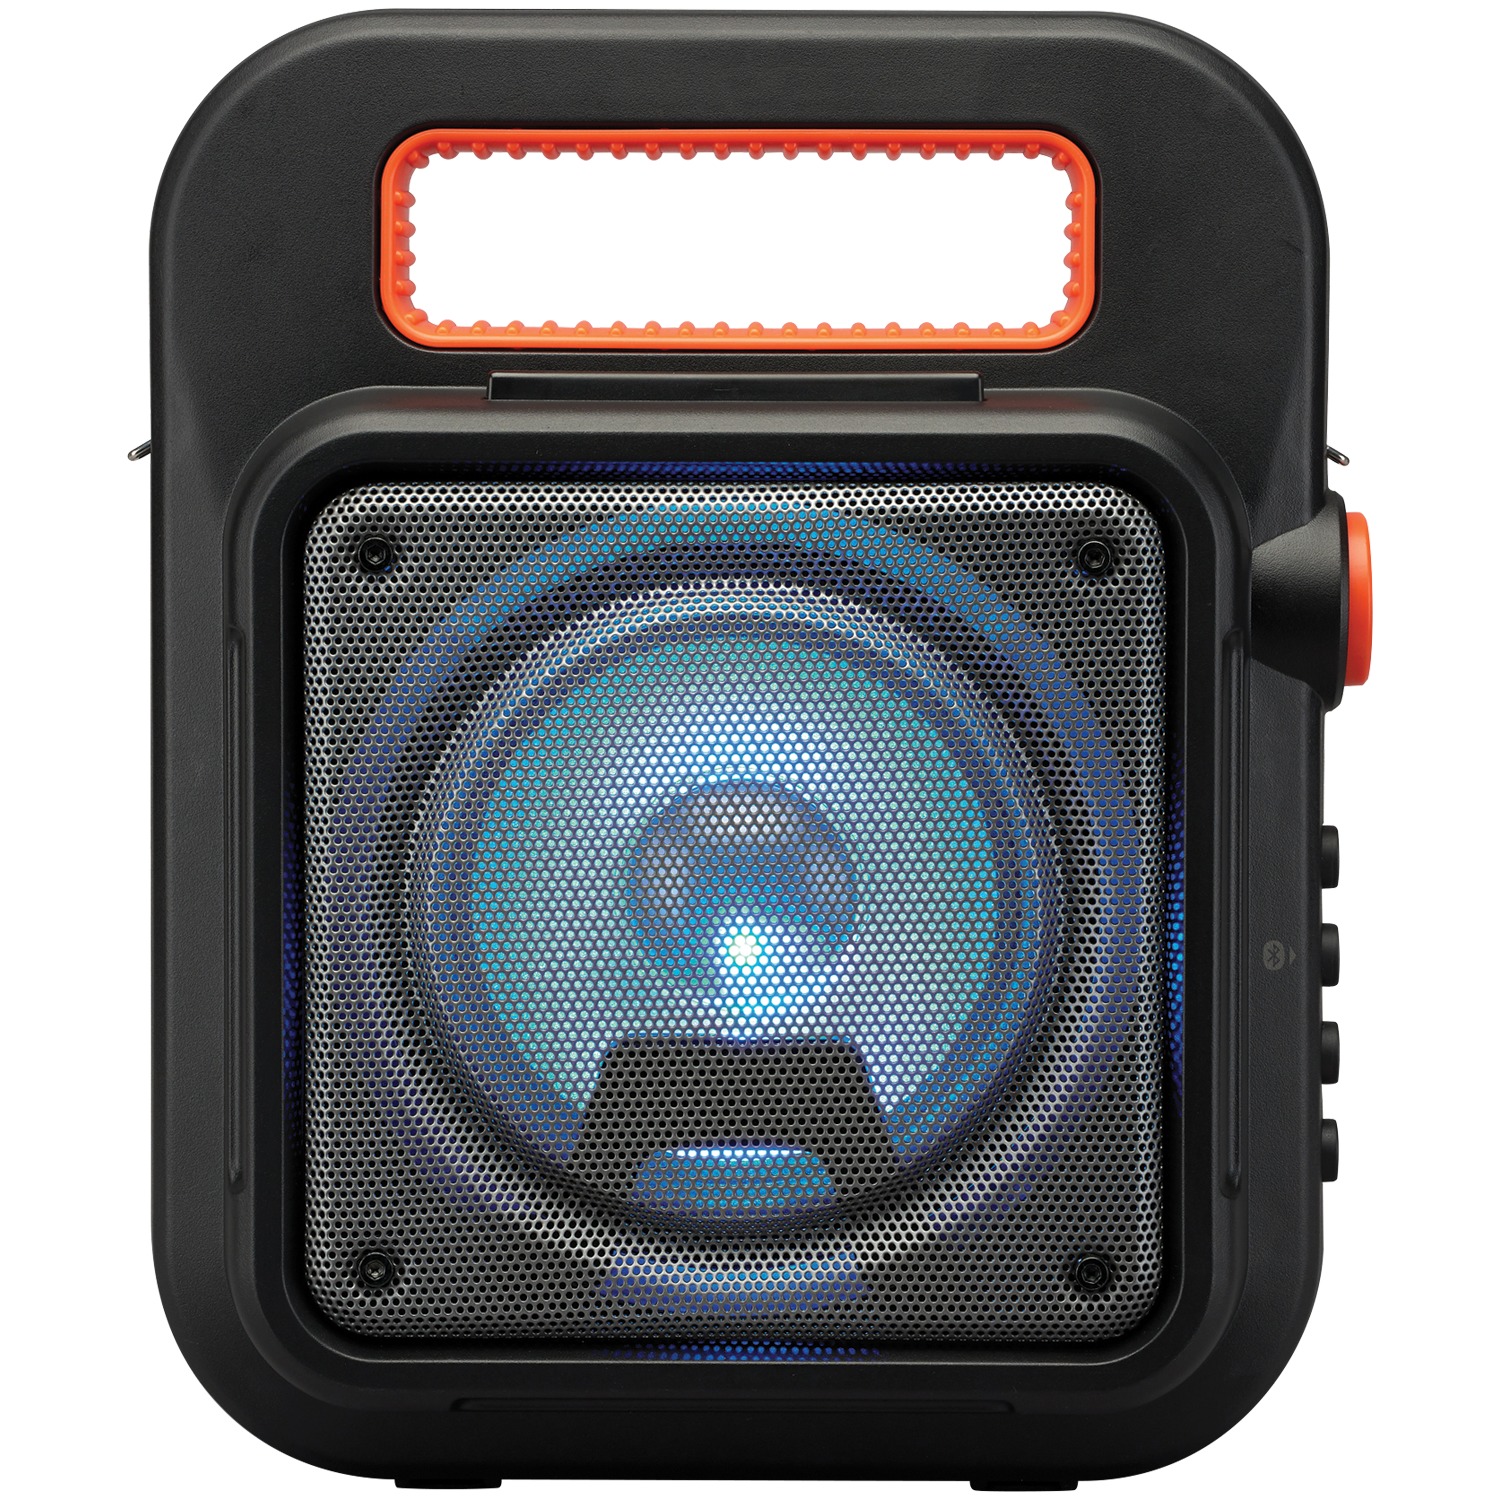 iLive Portable Bluetooth Speaker, Black, ISB309B - image 2 of 5